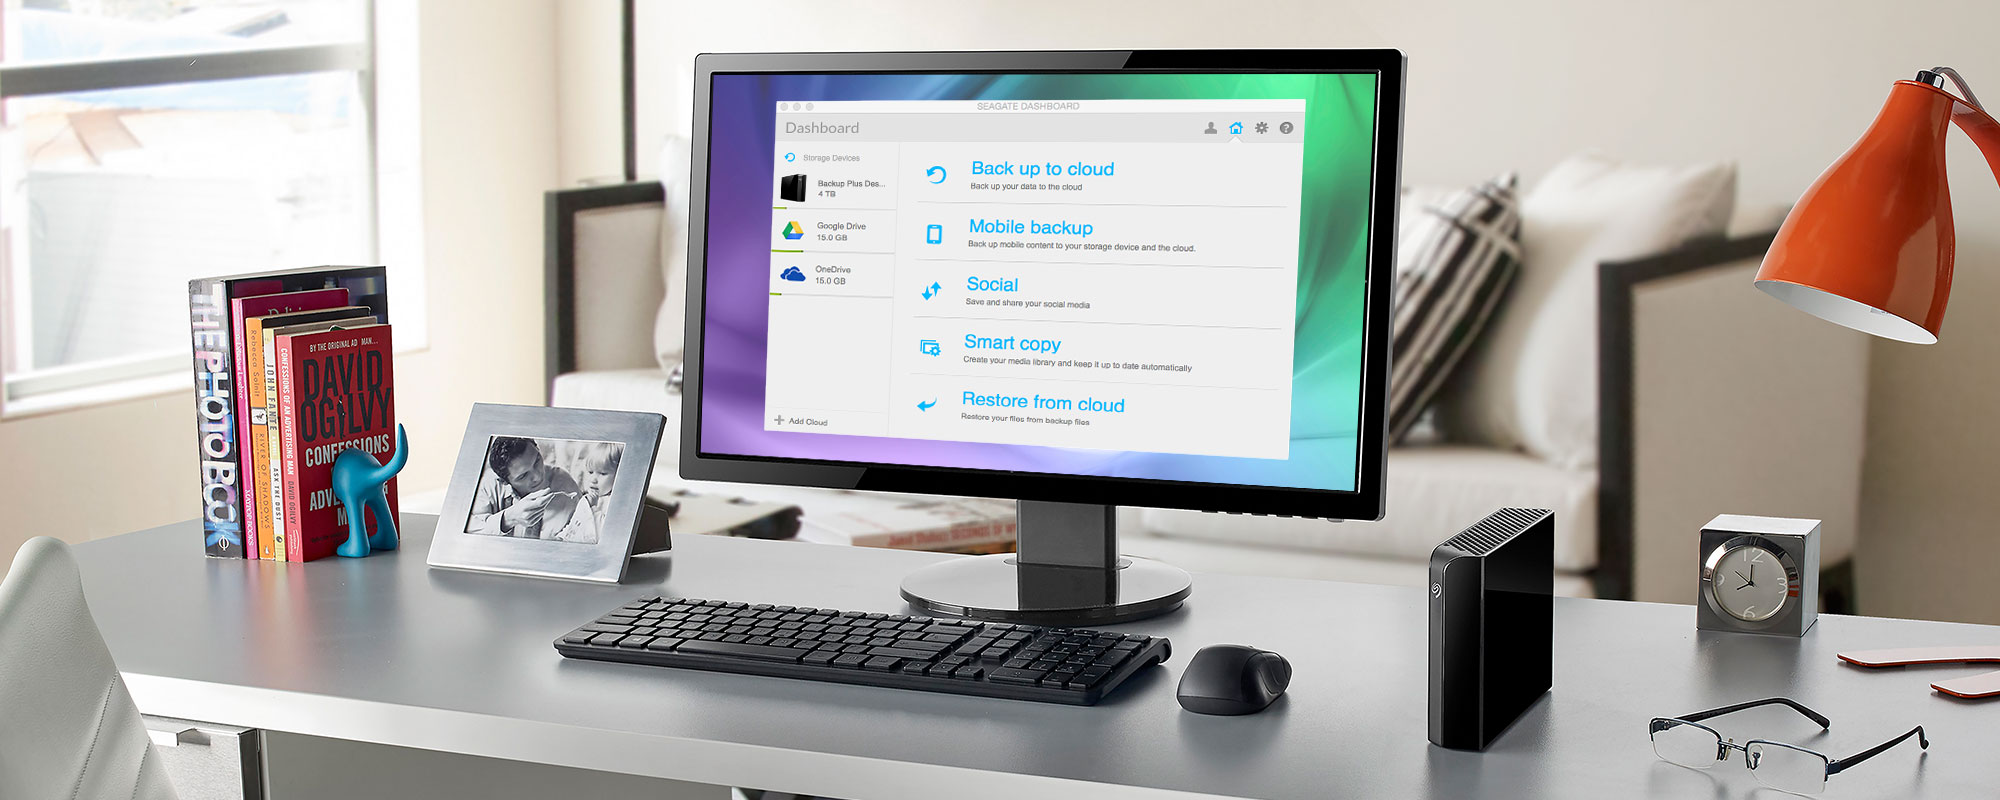 Seagate Backup Plus For Mac Desktop